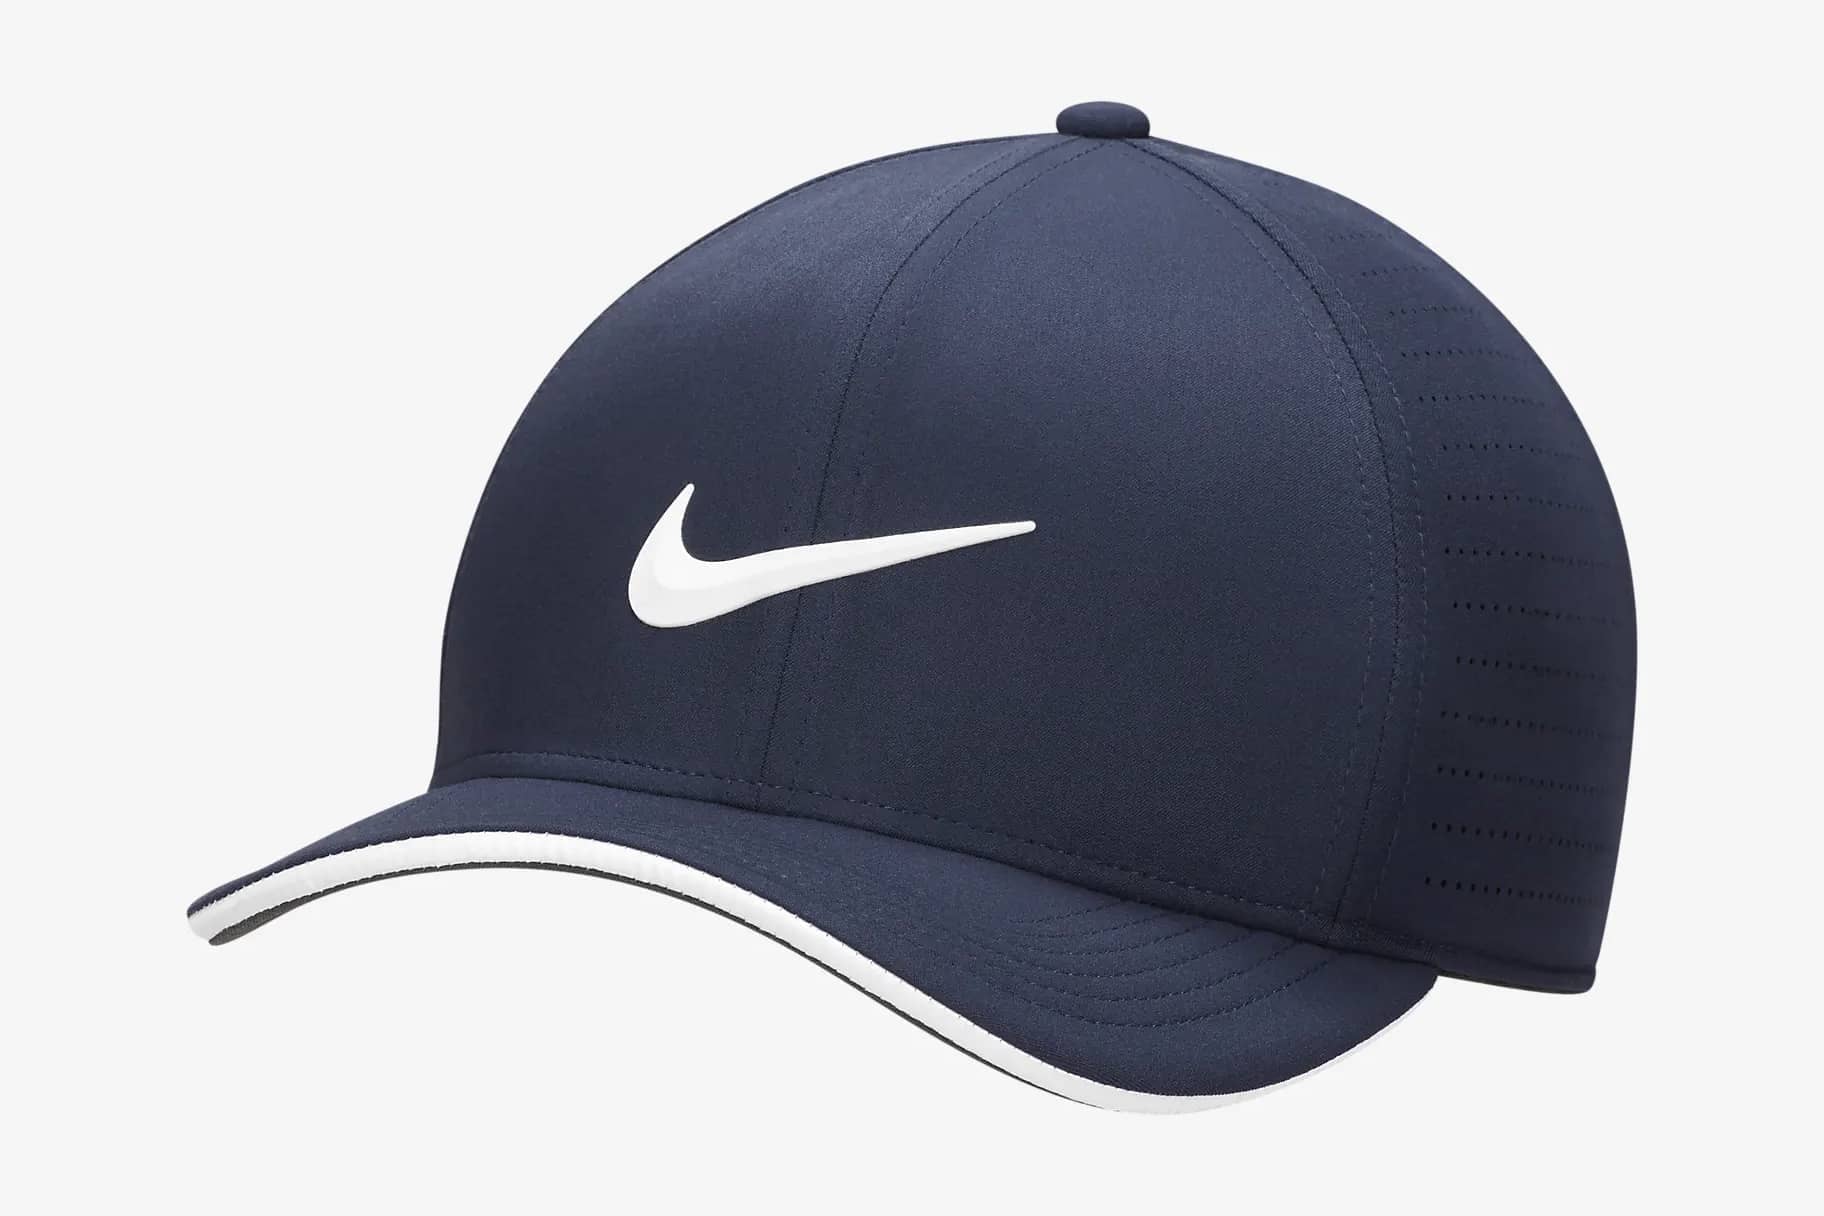 Wedze hat and cap Navy Blue Single WOMEN FASHION Accessories Hat and cap Navy Blue discount 99% 